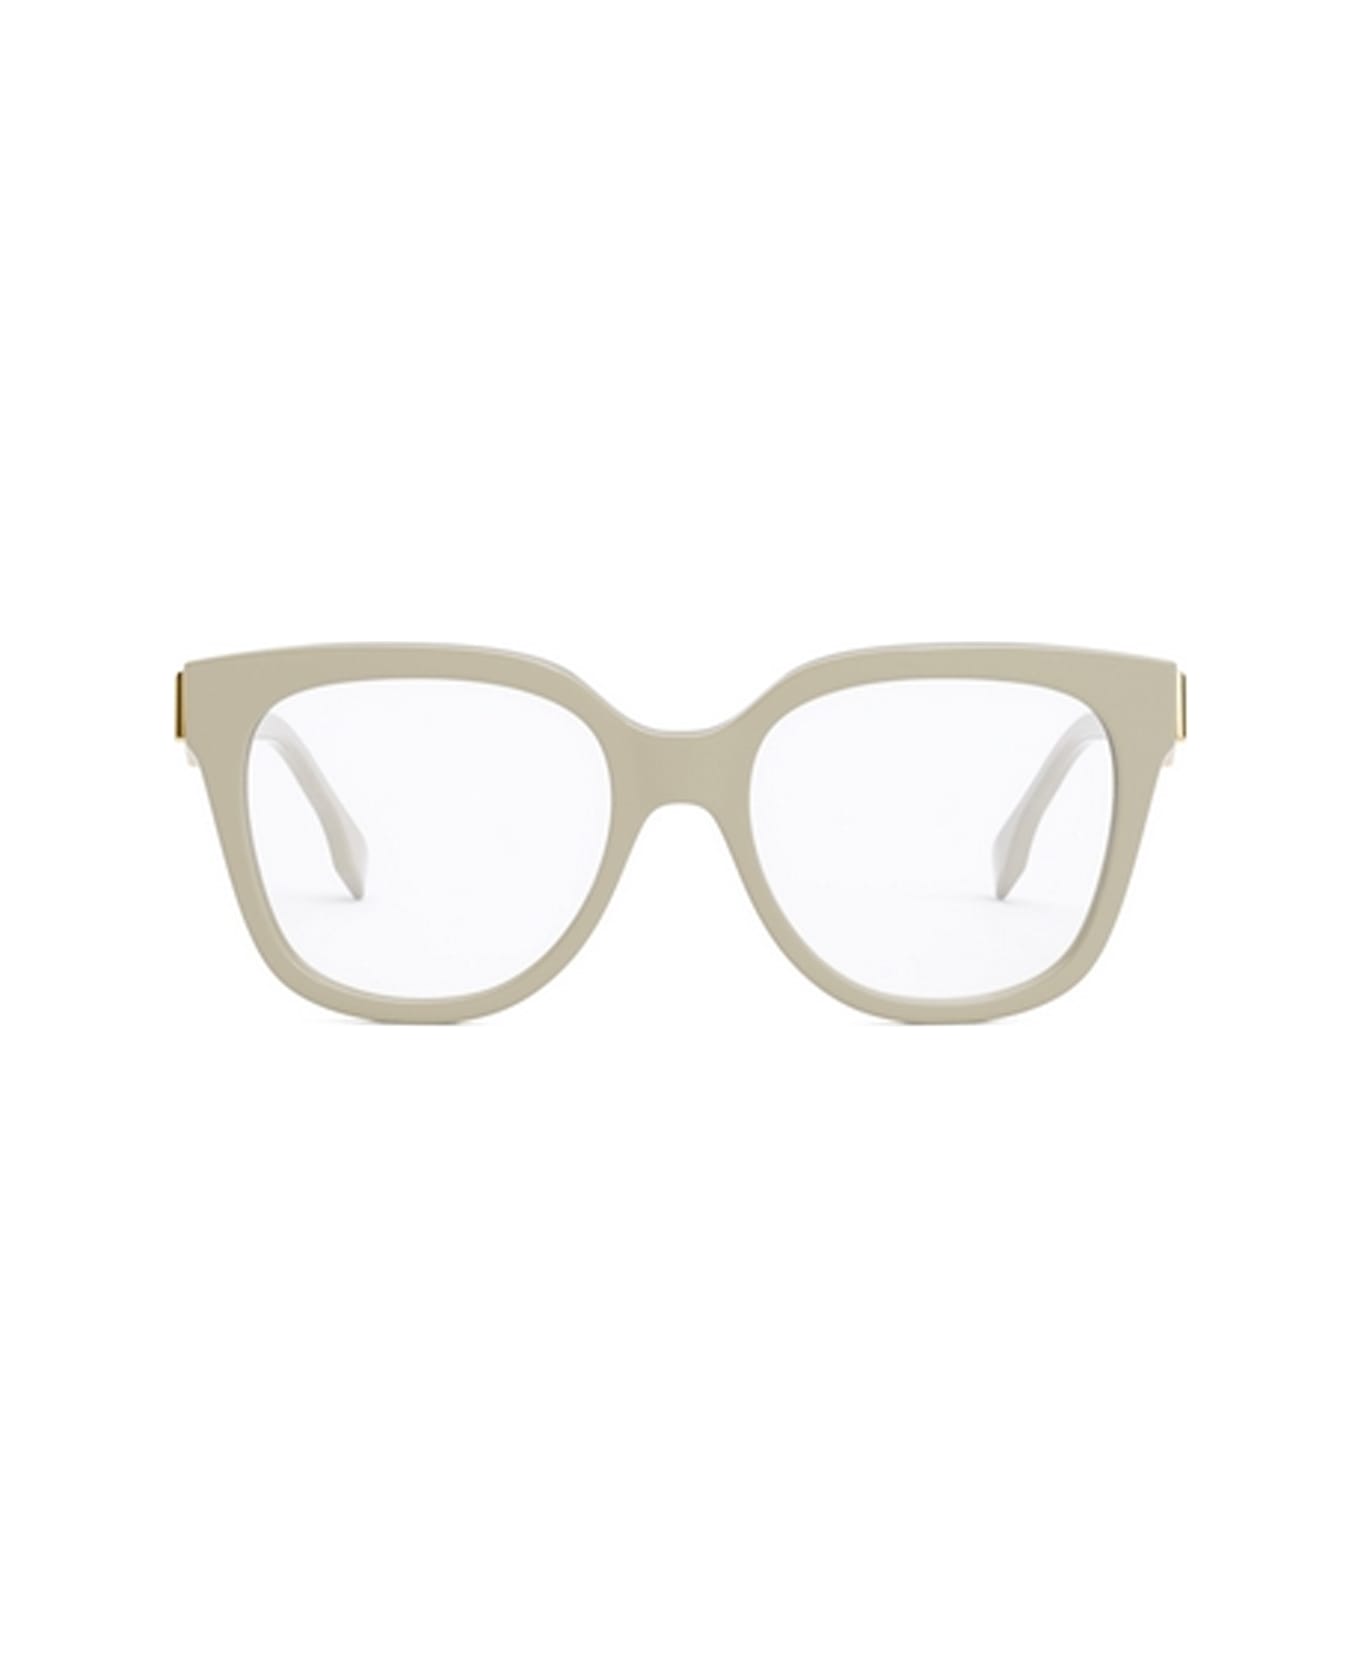 Fendi Eyewear Fe50064i 025 Glasses - Avorio